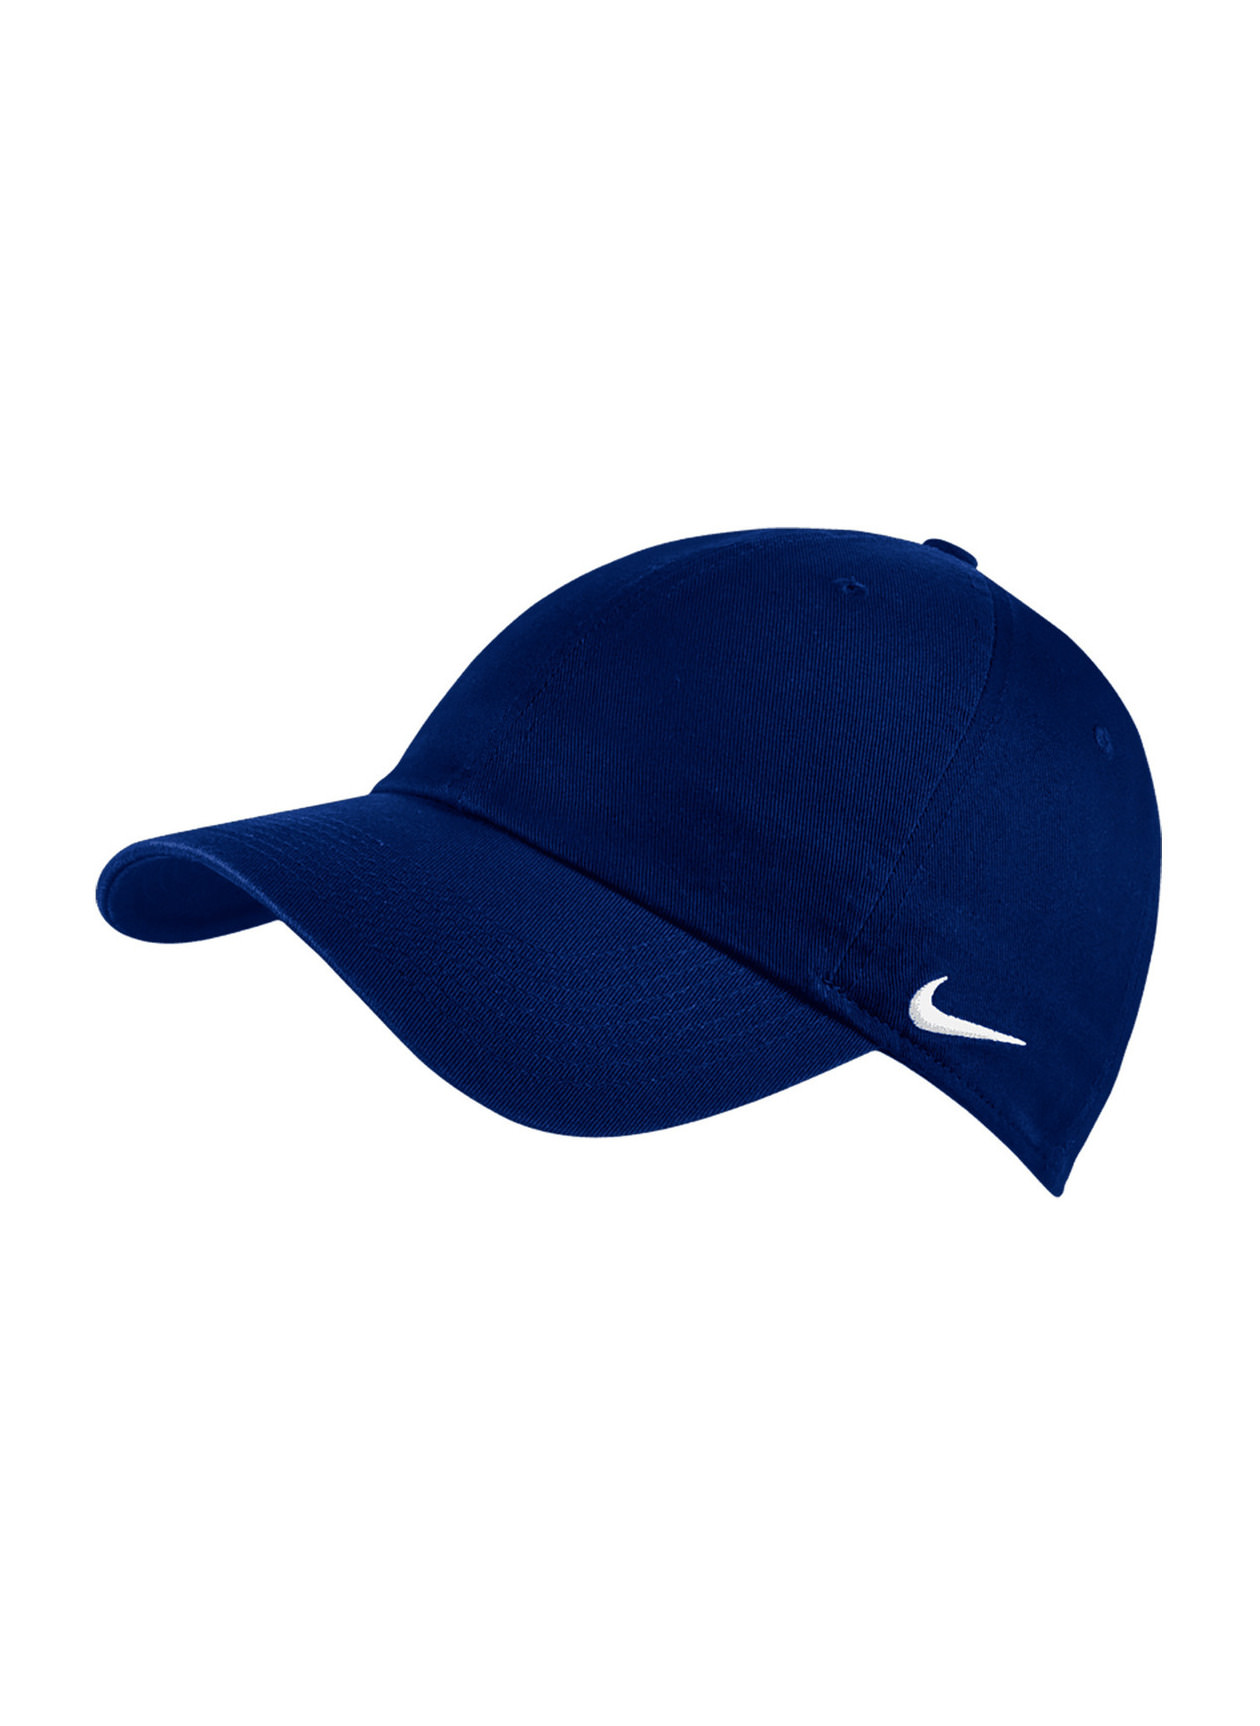 Nike College Navy / White Team Campus Hat